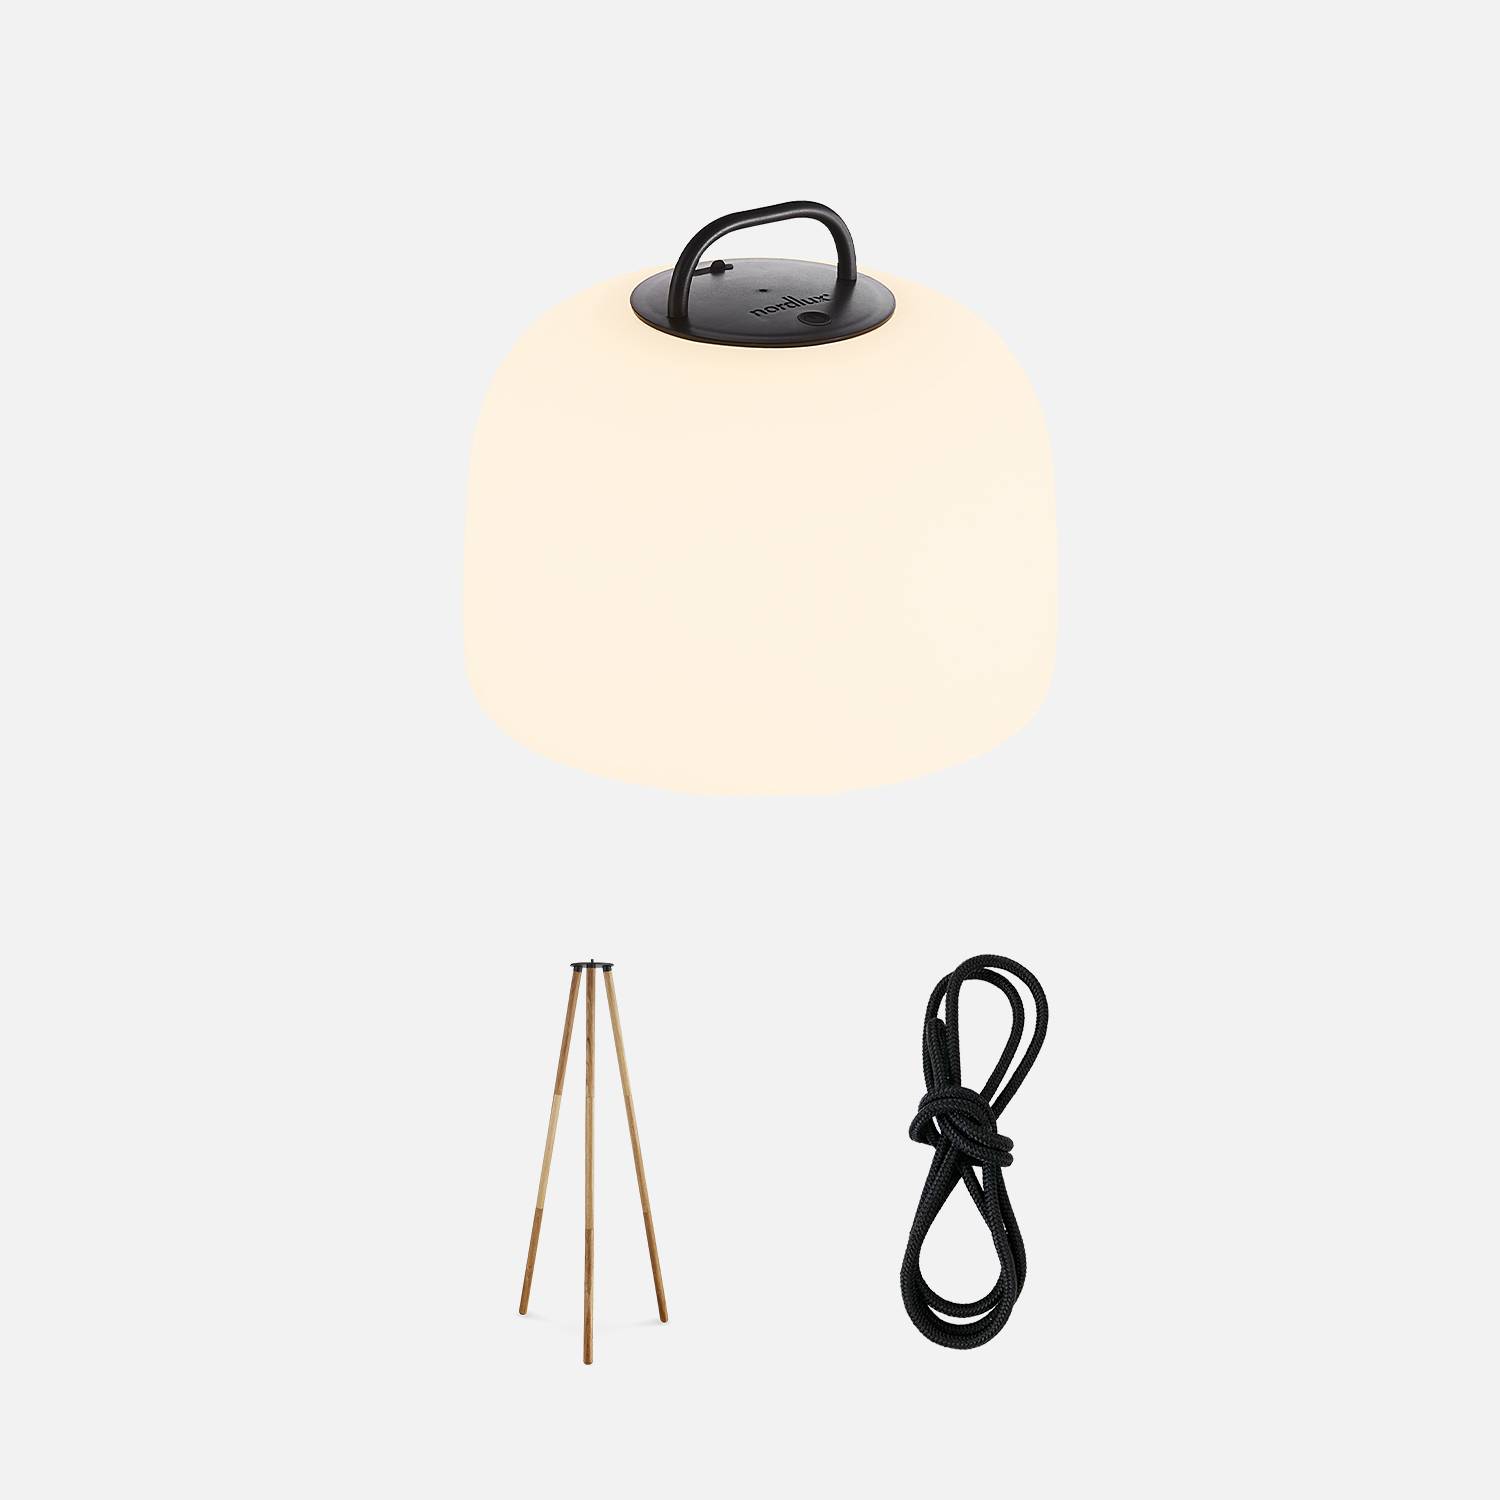 Lampe intérieure LED 3 en 1 – TRIPADA XL – lampe en plastique avec pieds en bois d'Hévéa, Ø36cm rechargeable, à suspendre, avec trépied 1m et corde Photo2